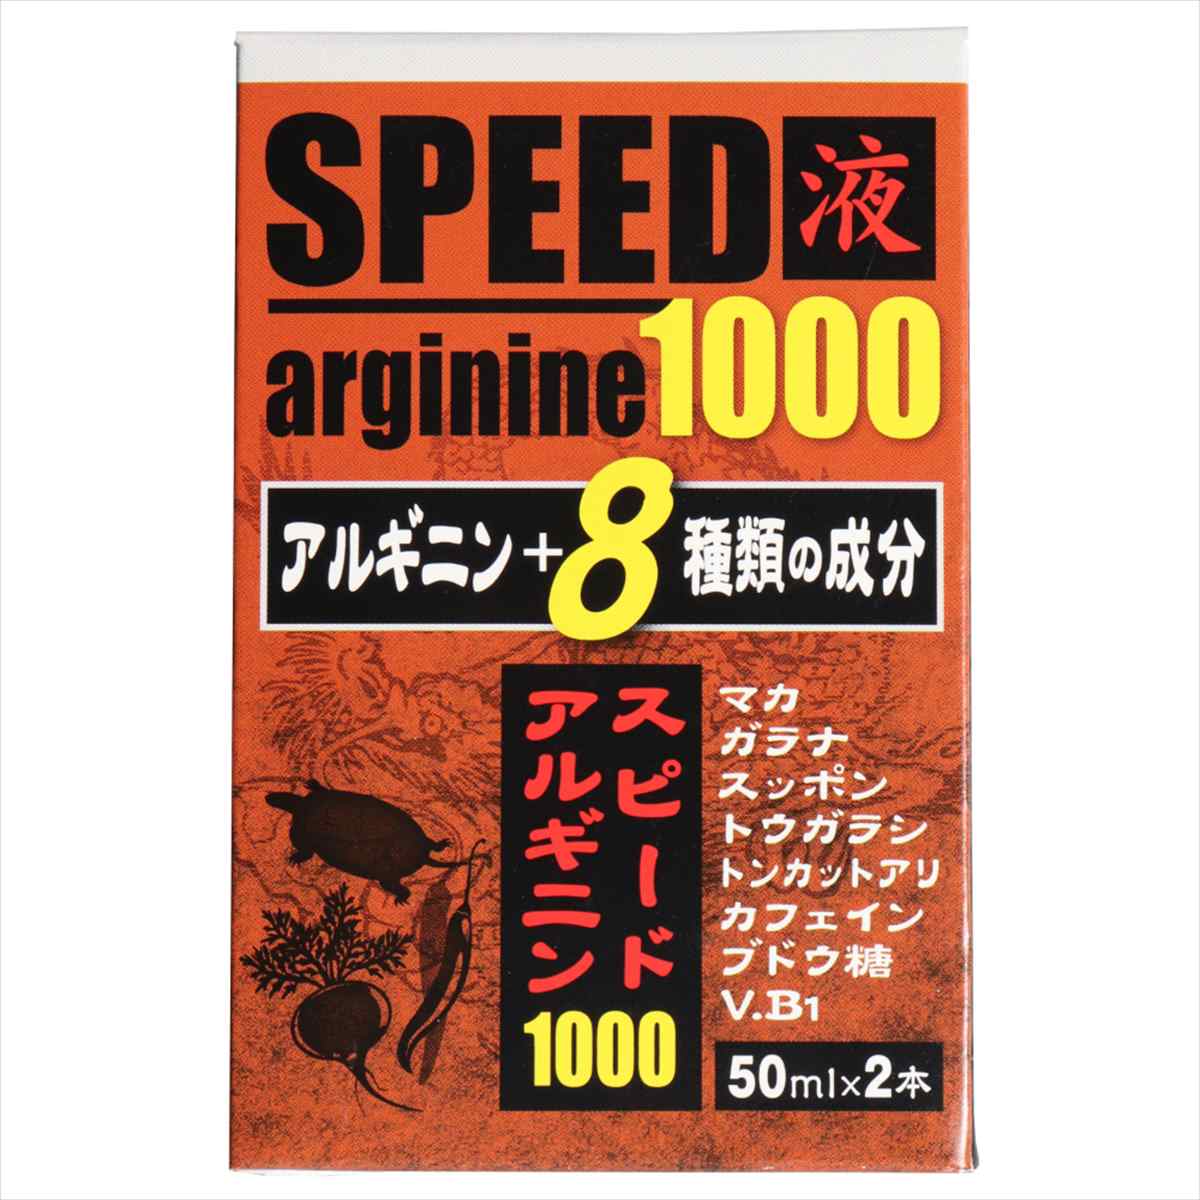 スピードアルギニン1000